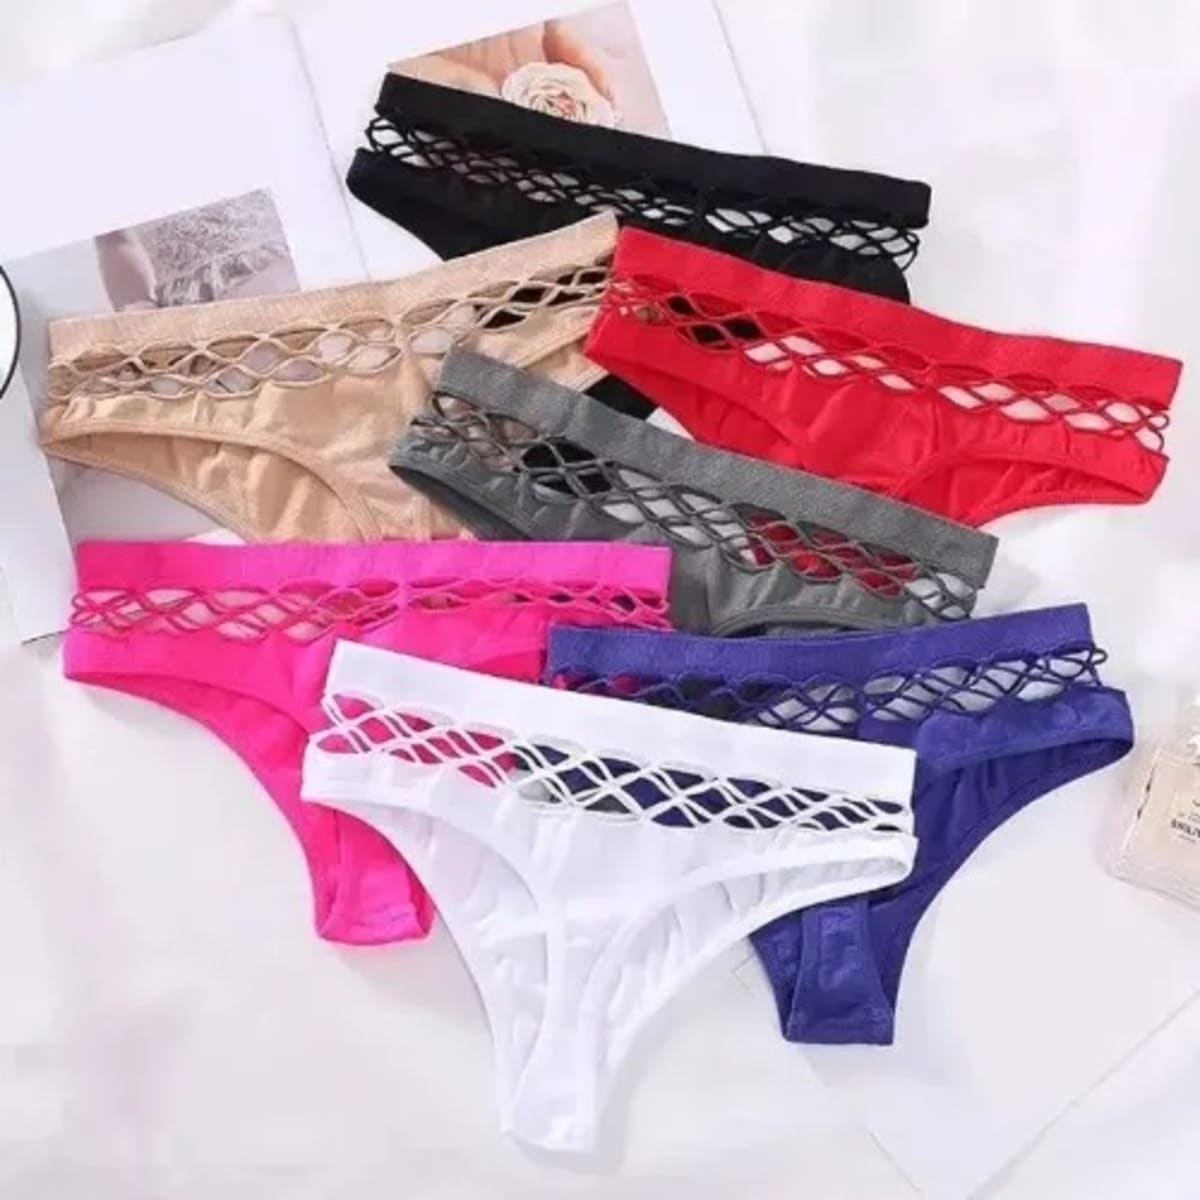 G-string Ladies Underwear Pants - Lace - 6pcs